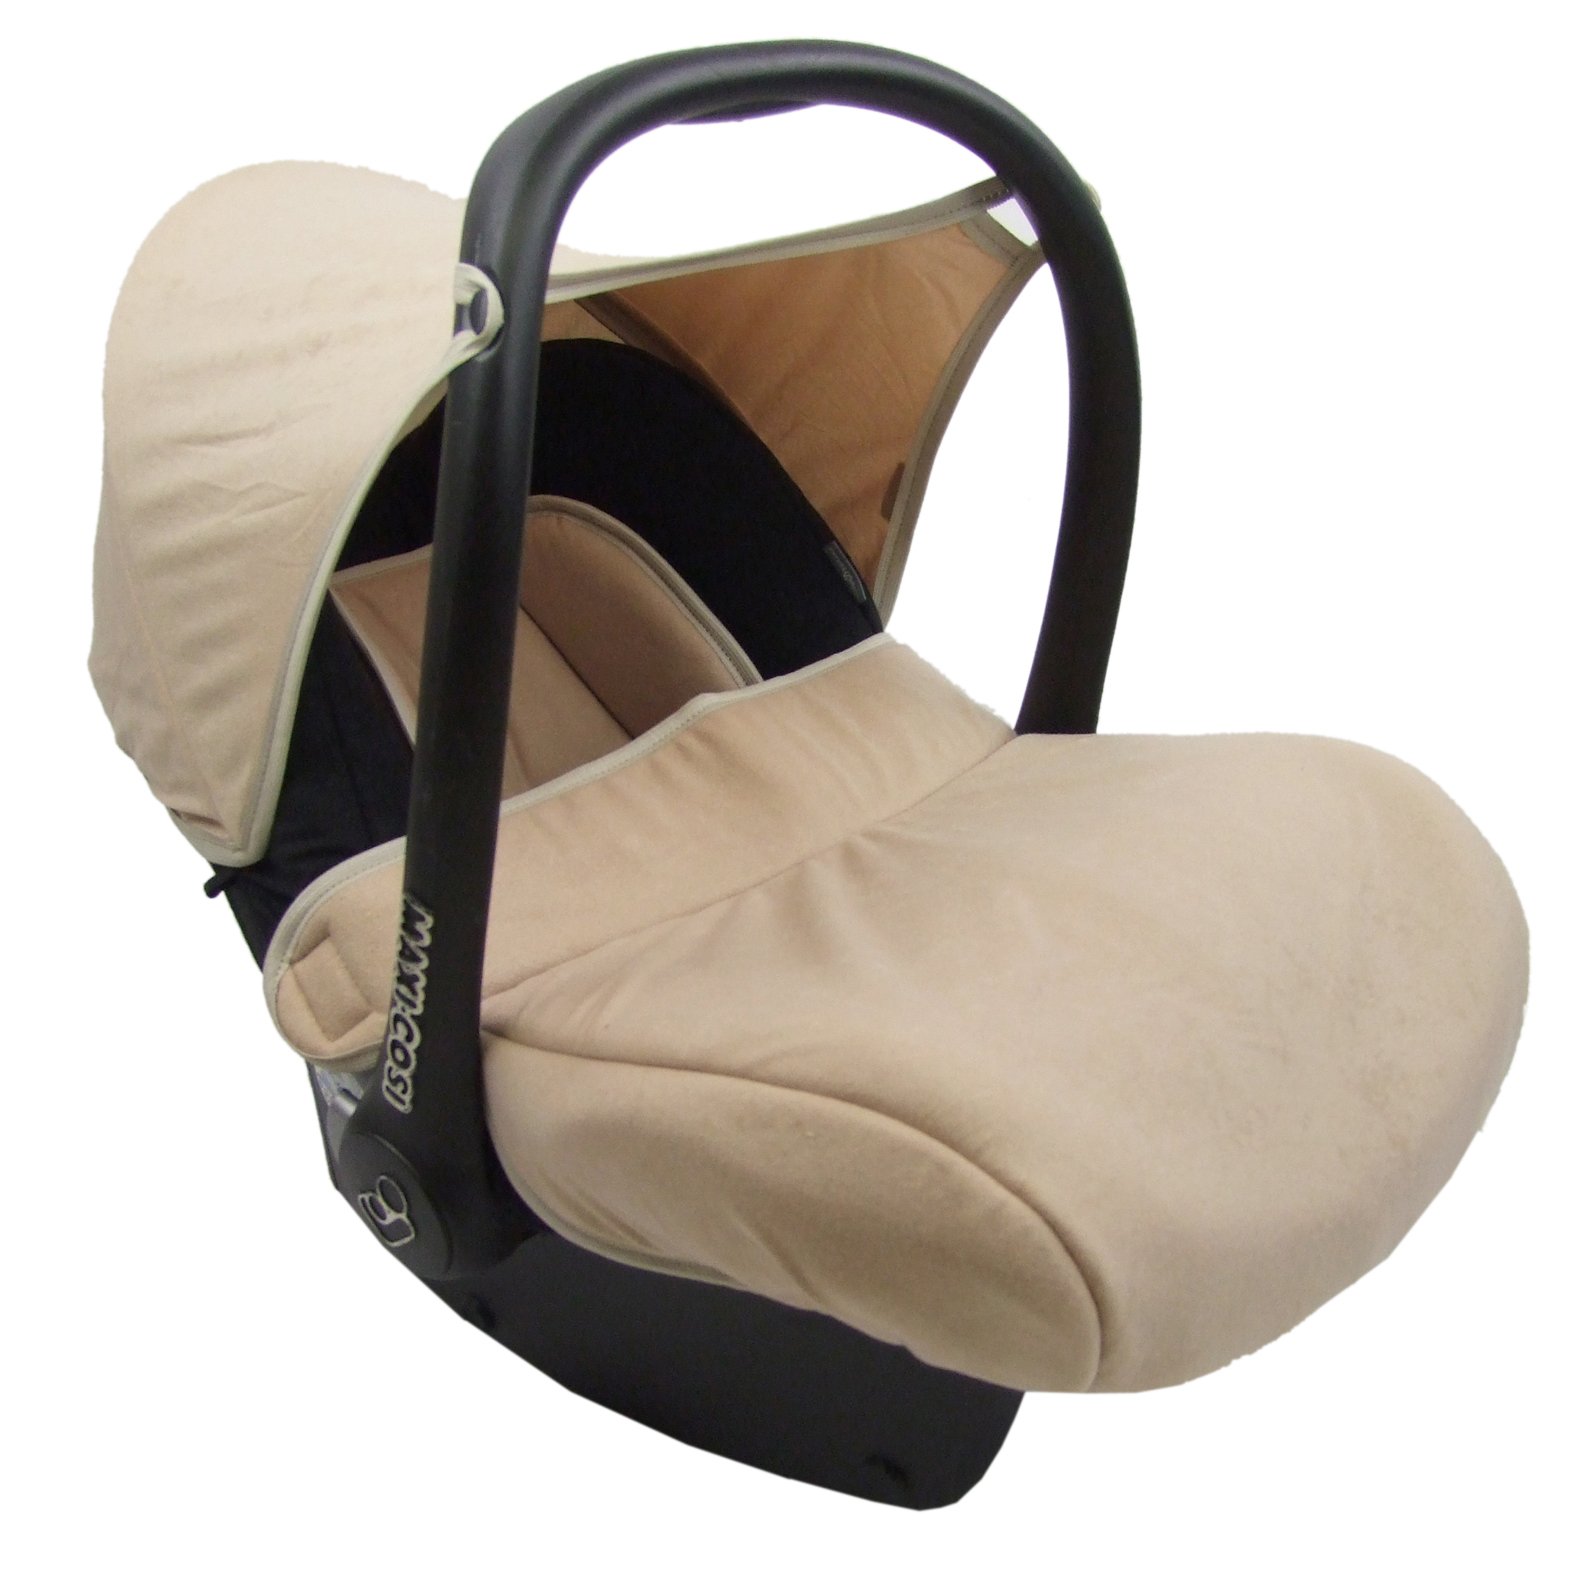 BAMBINIWELT Bezug Ersatzbezug kompatibel mit Maxi-Cosi CabrioFix für Babyschale 7-tlg Komplett-Set (schwarz-beige)